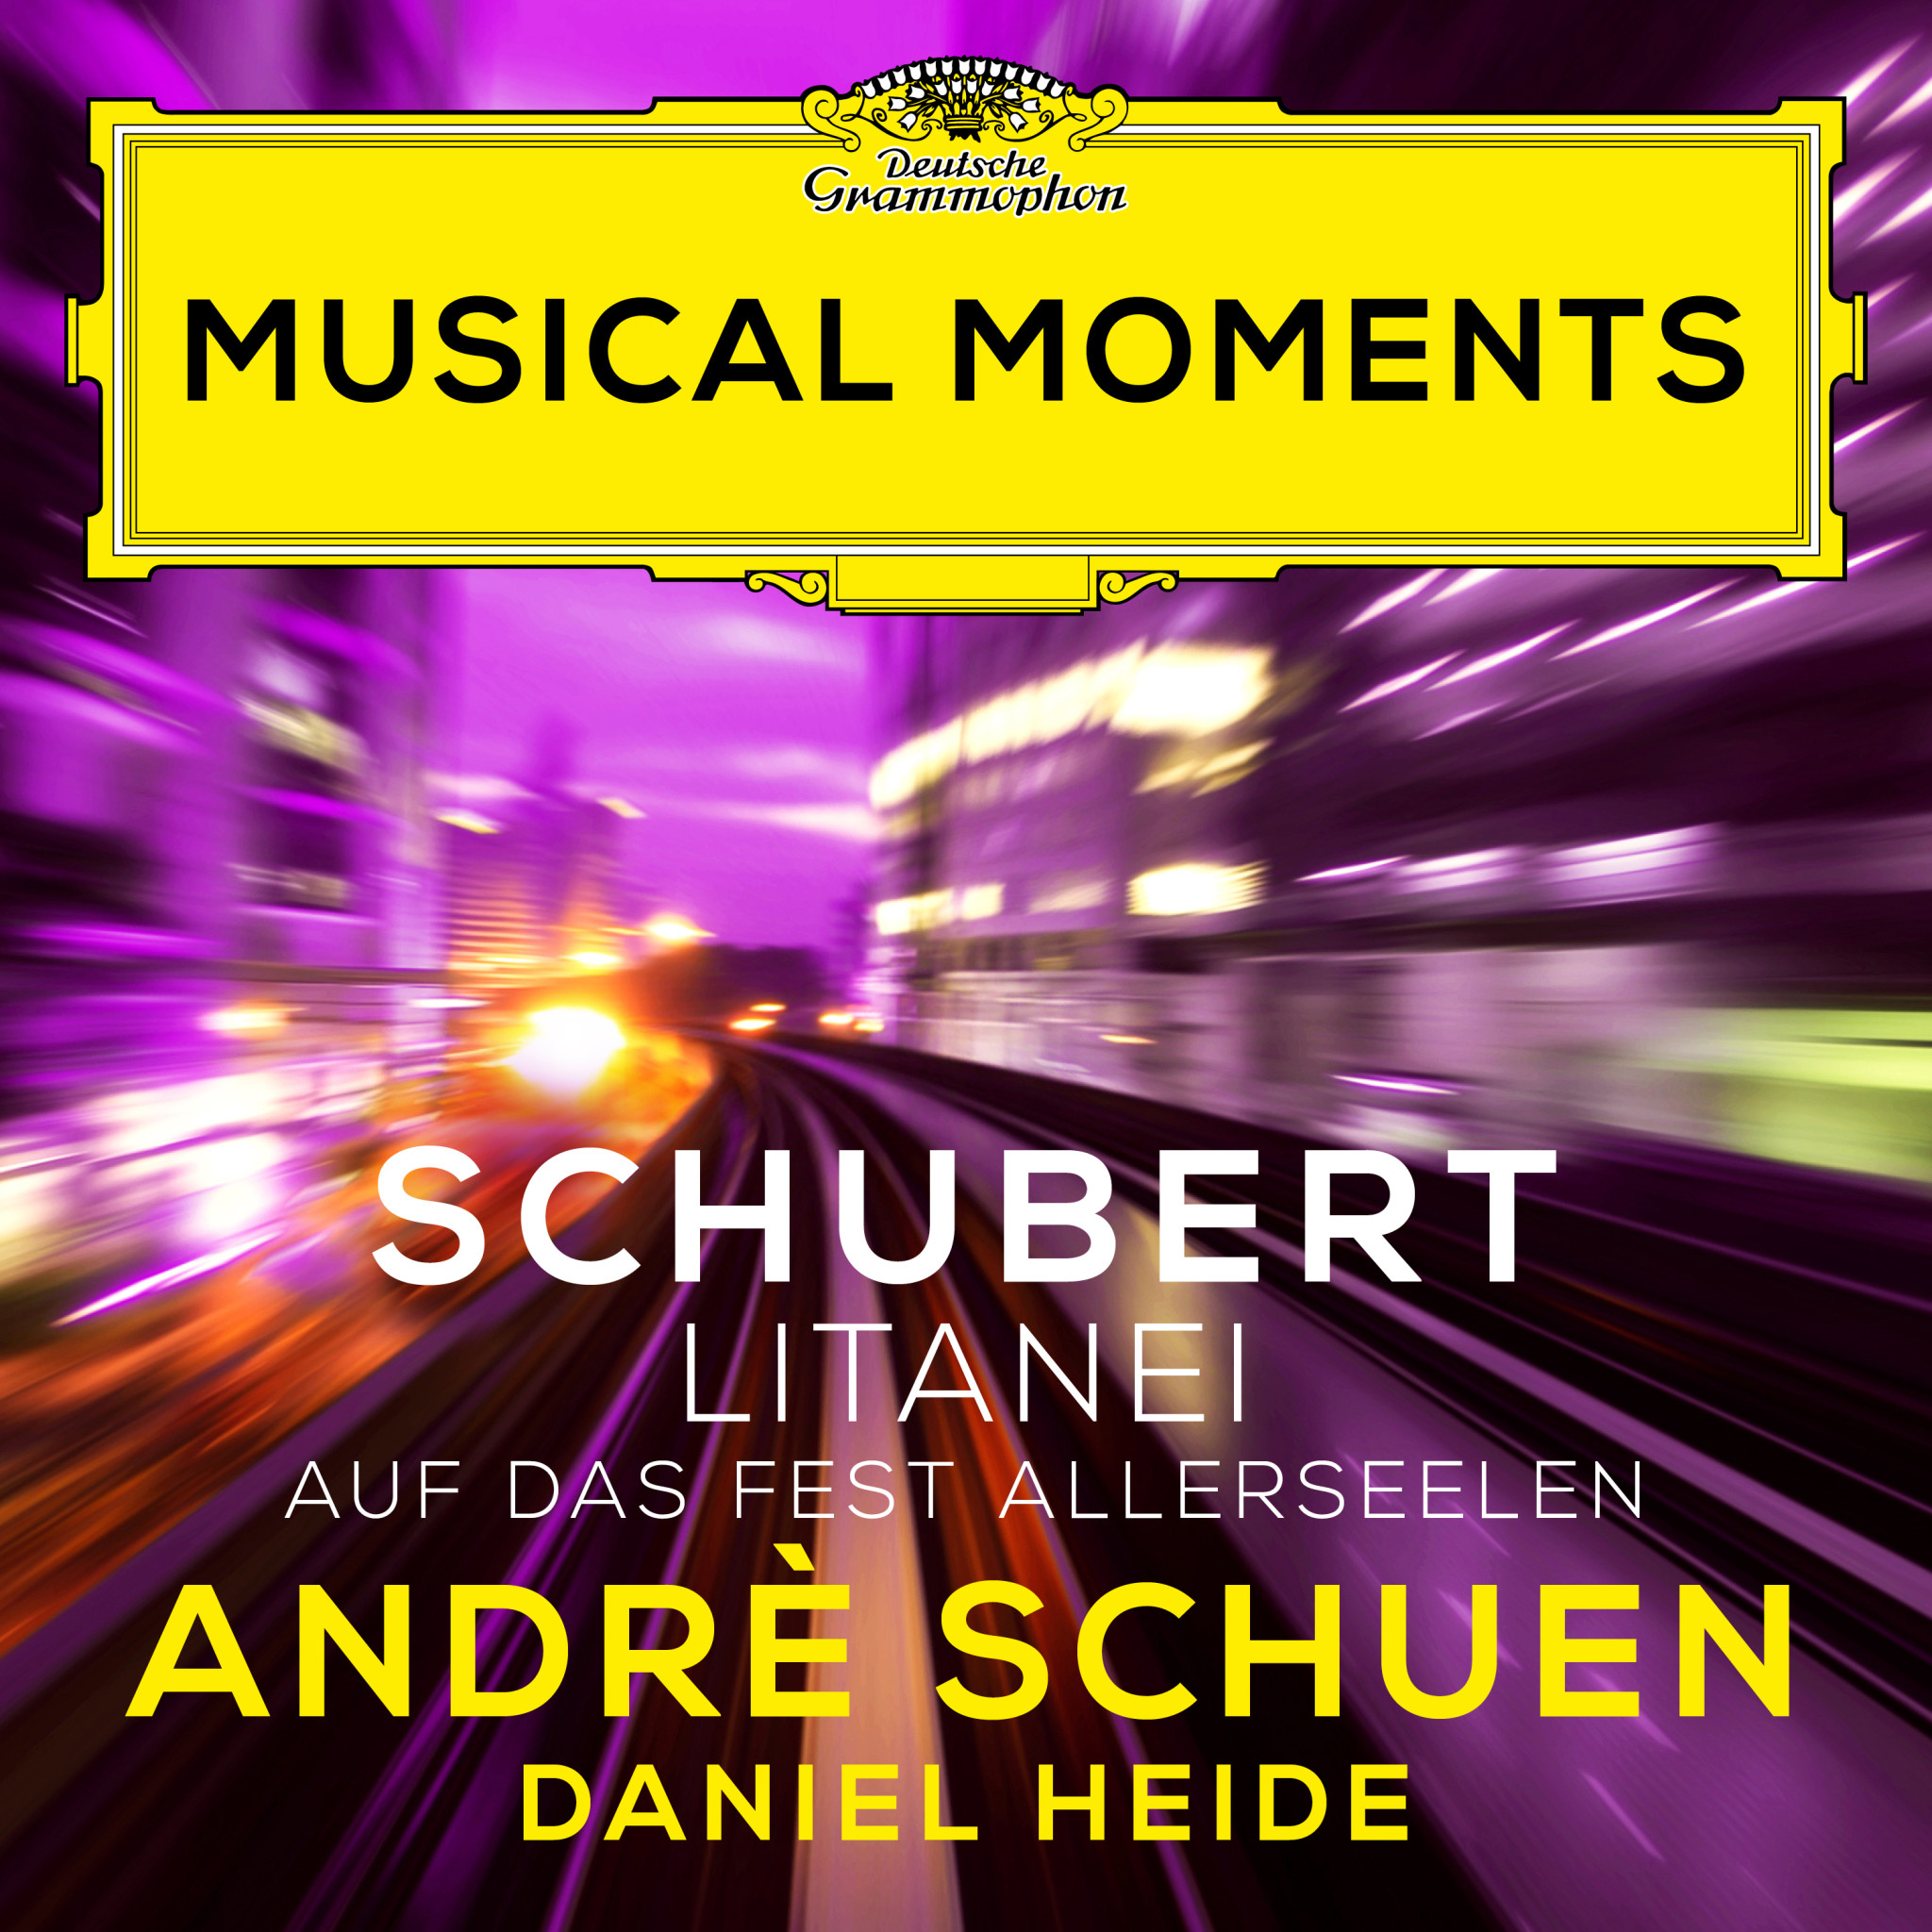 Andrè Schuen - Schubert: Litanei auf das Fest Allerseelen, D. 343 Cover